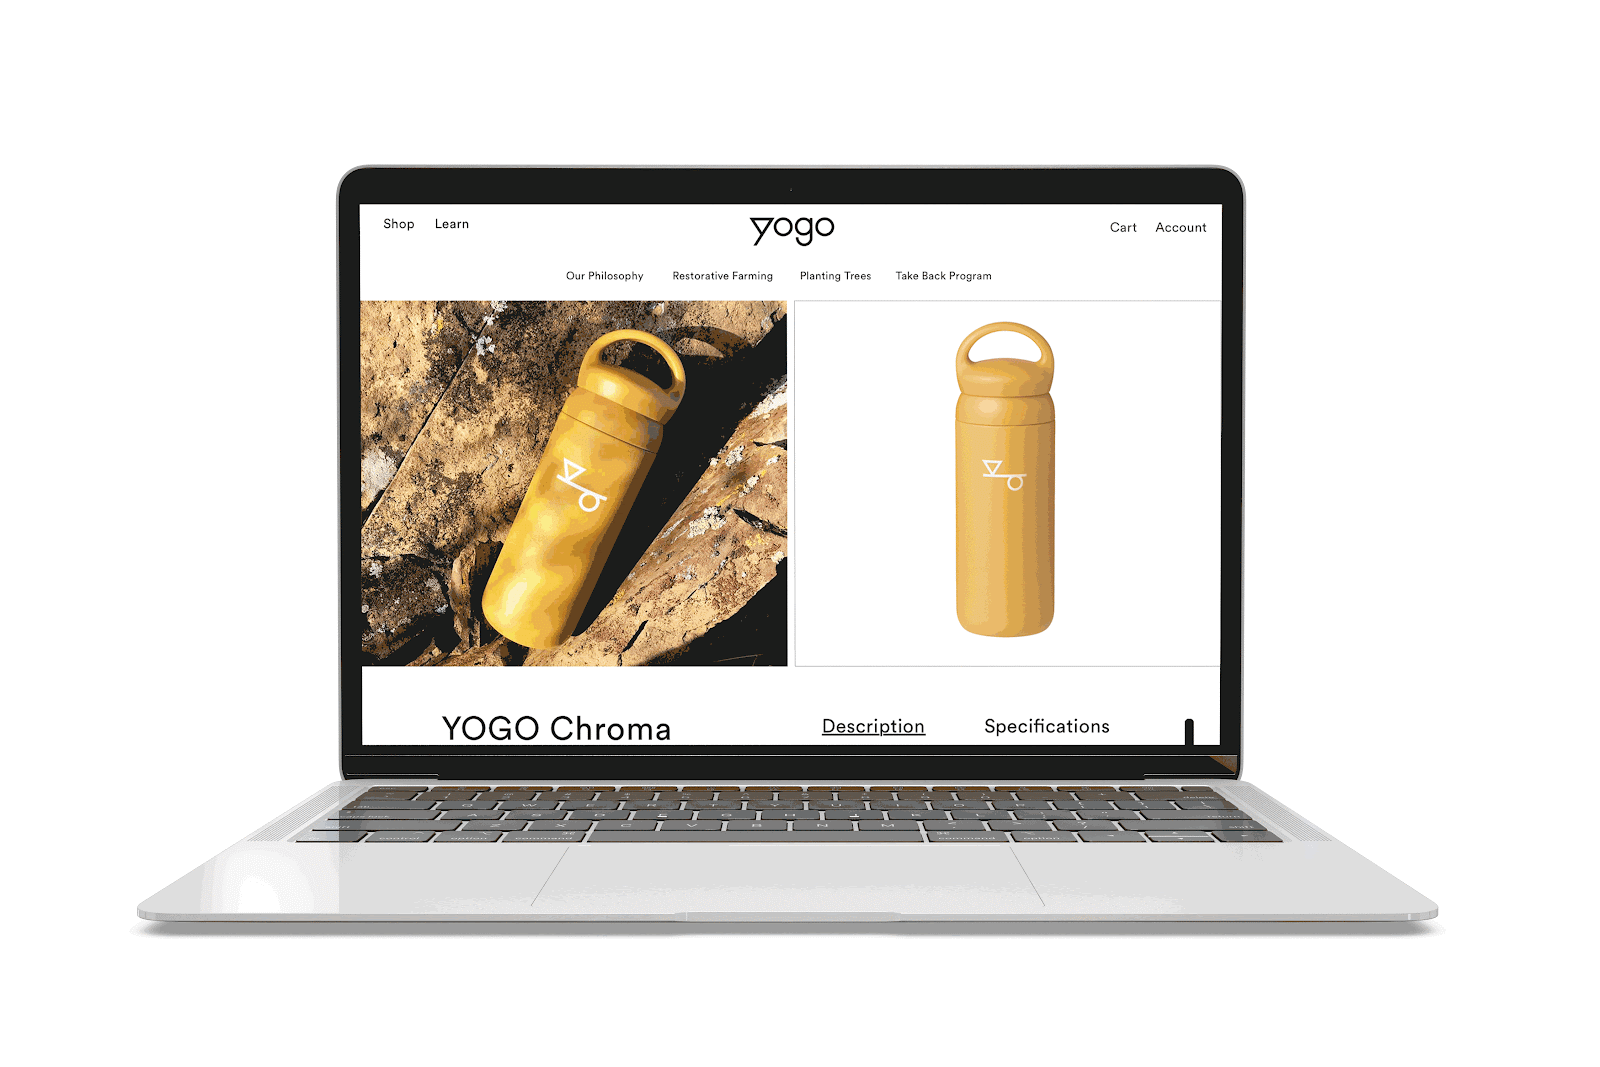 YOGO瑜伽垫品牌视觉设计